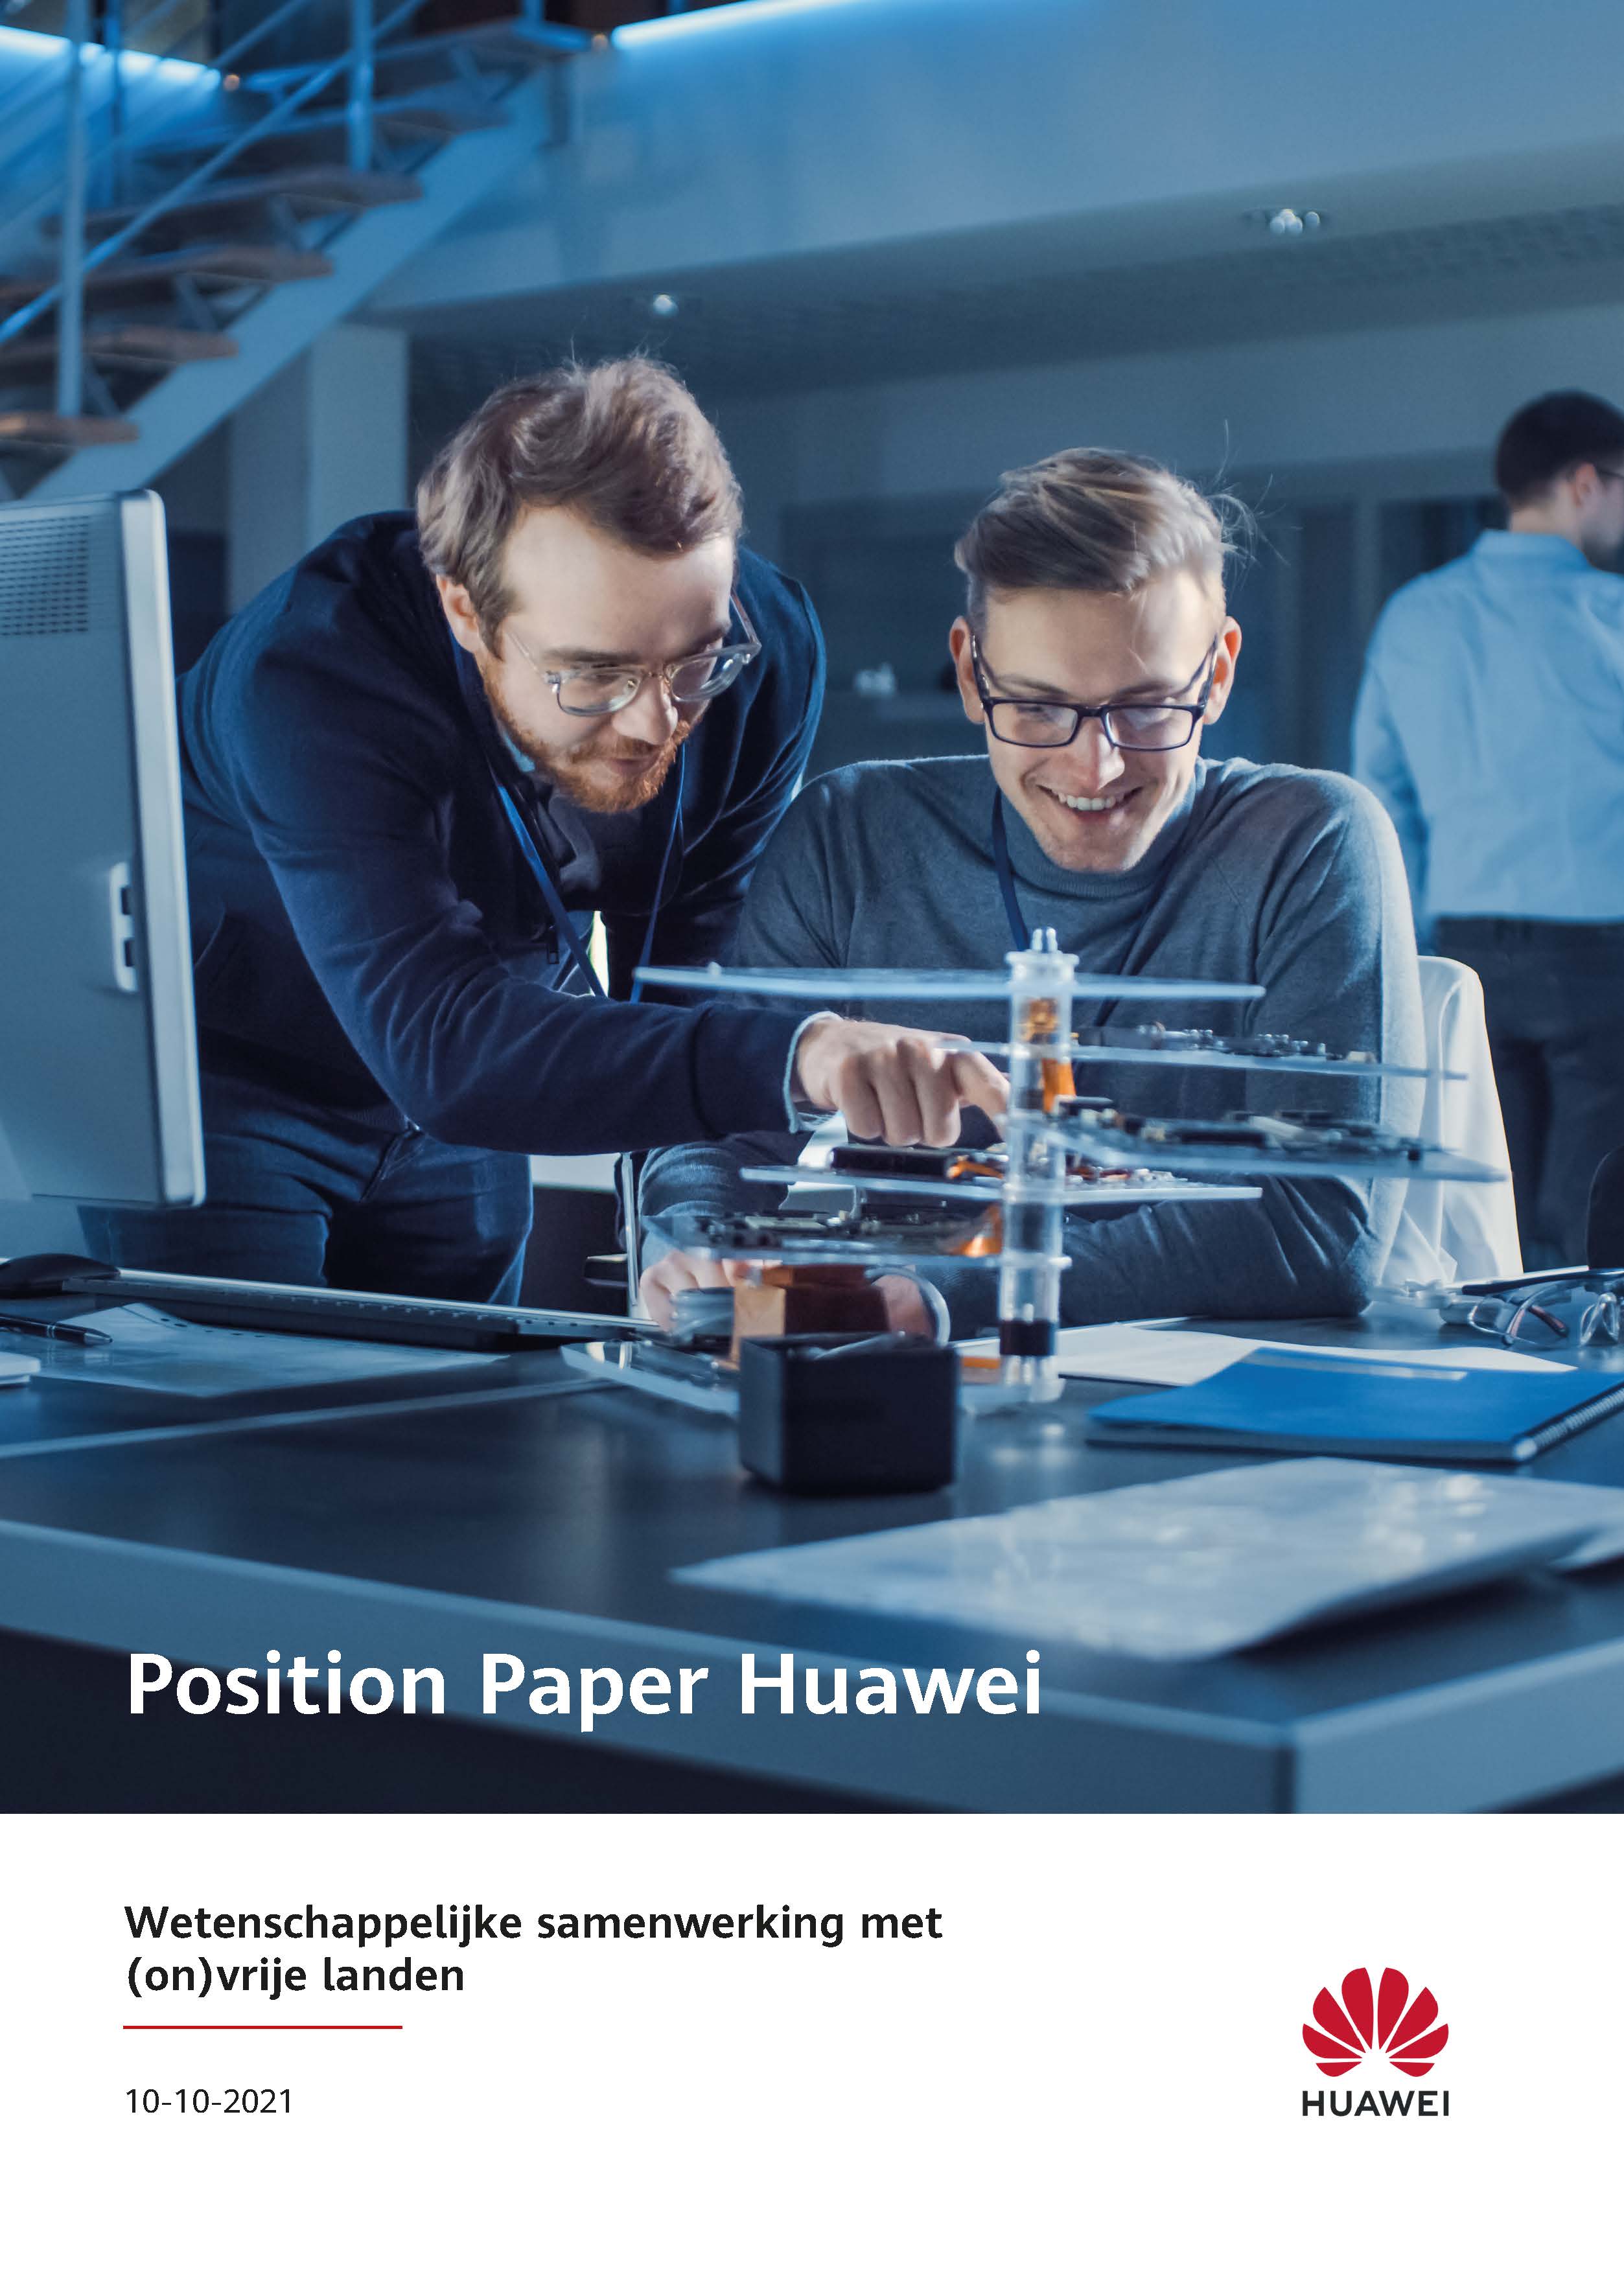 position paper wetenschappelijke samenwerking met on vrije landen cover